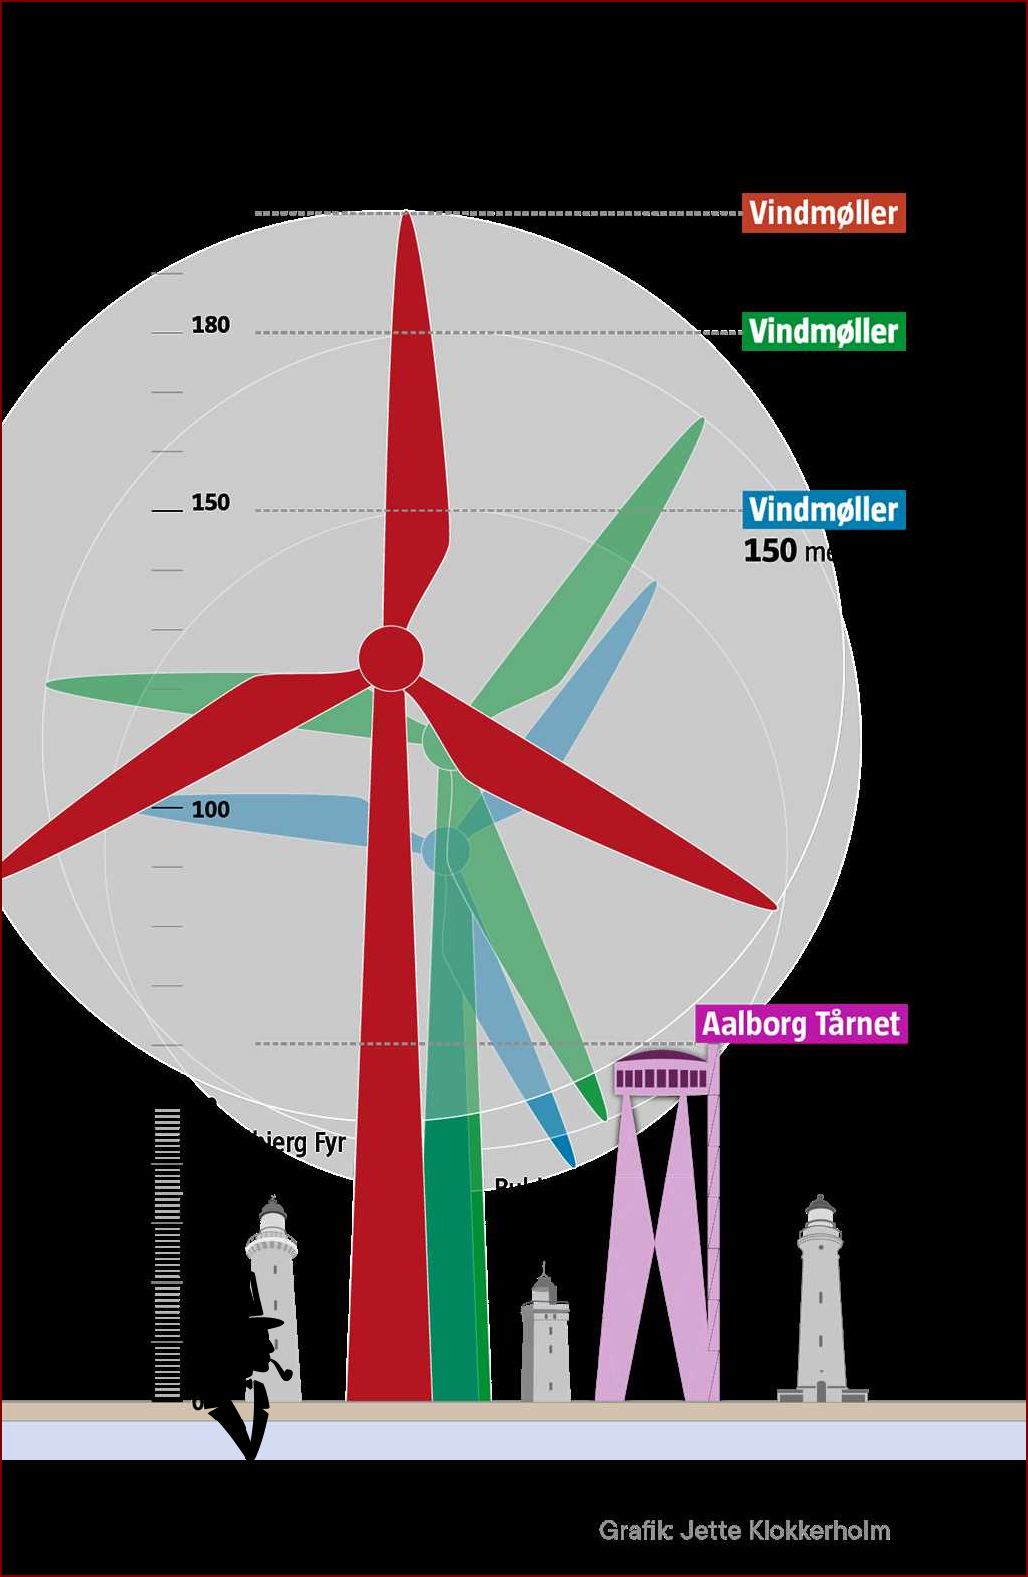 Historien bag verdens største vindmølle